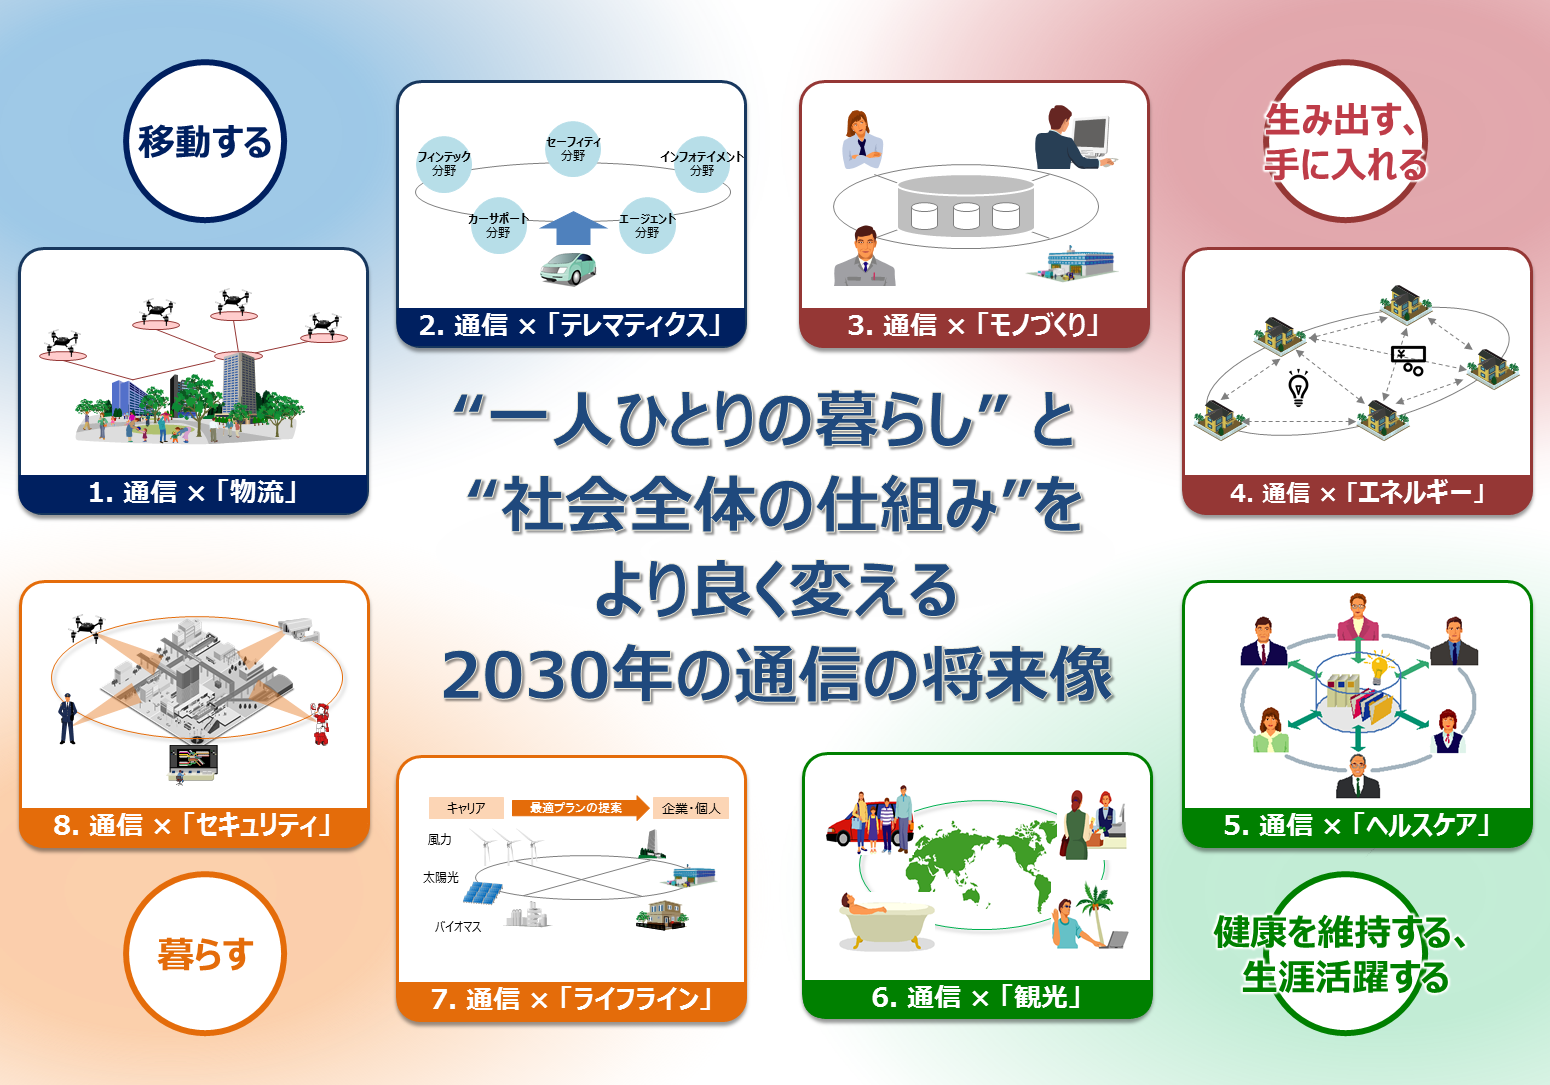 Hitachi Telecommunication 2030